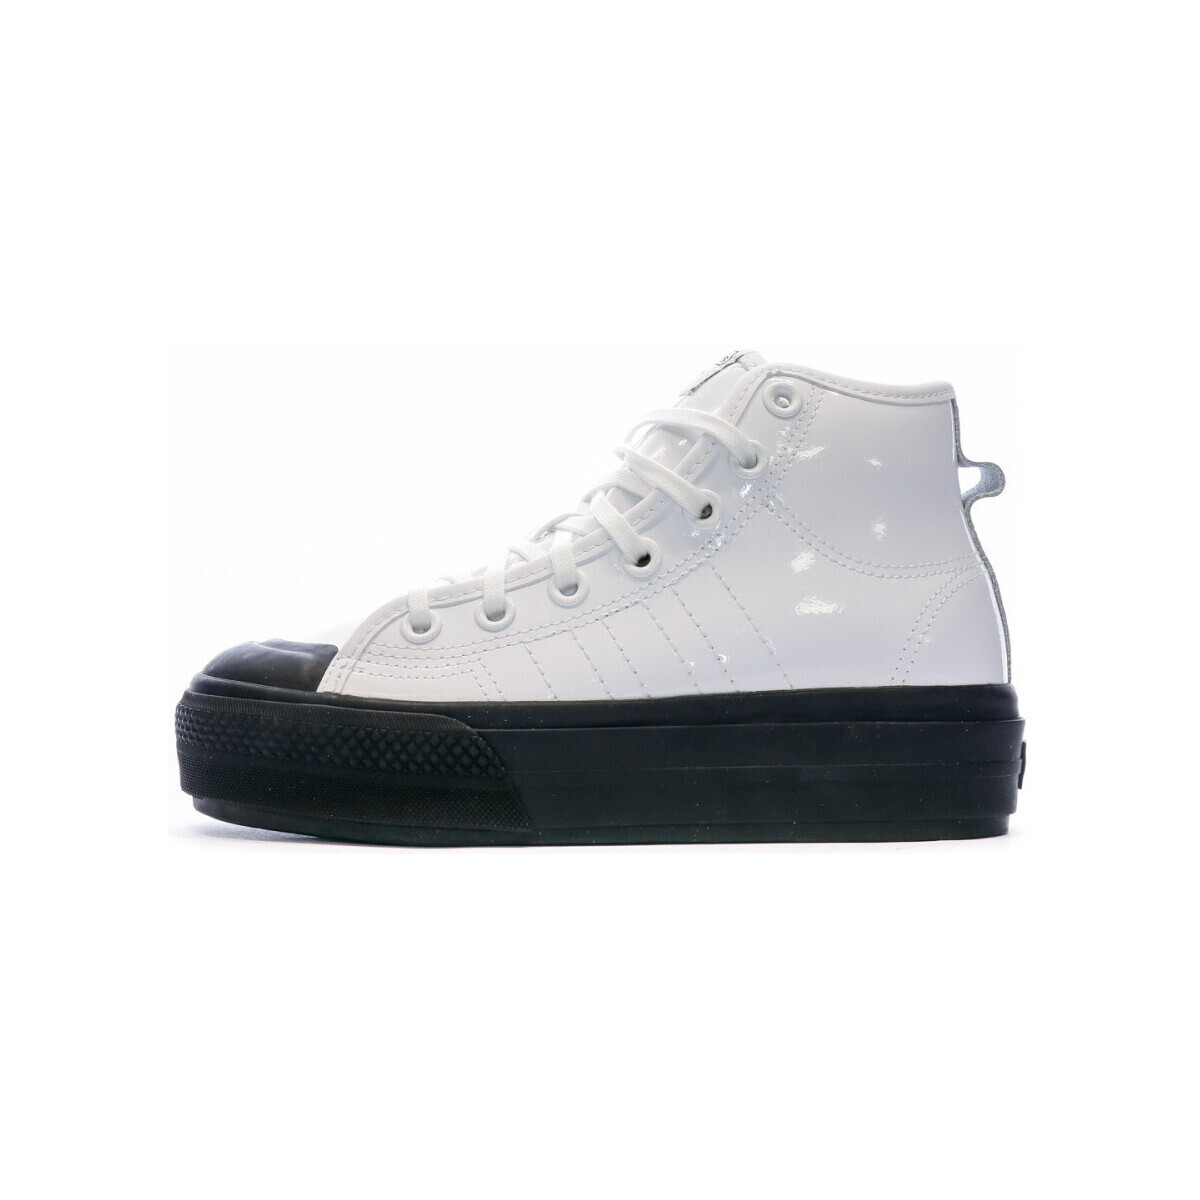 Schuhe Damen Sneaker High adidas Originals FY7606 Weiss